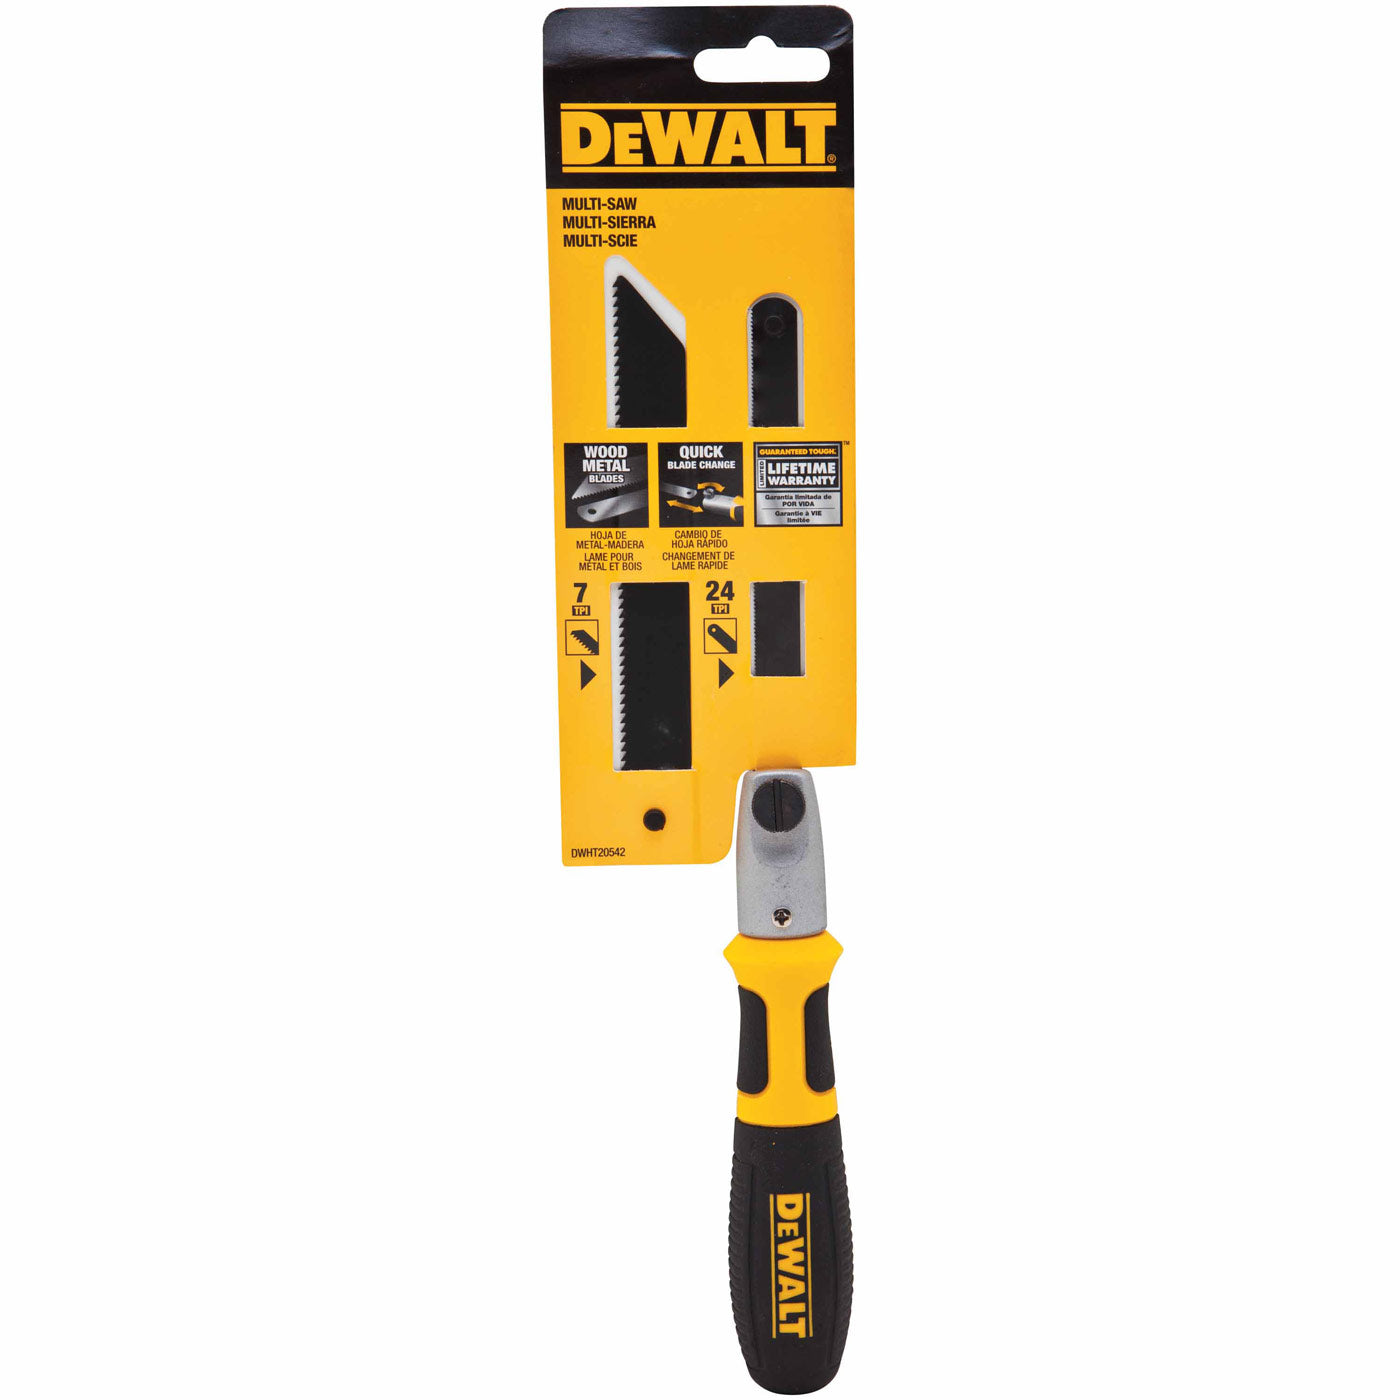 DeWalt DWHT20542 Cushion Grip Multi-saw